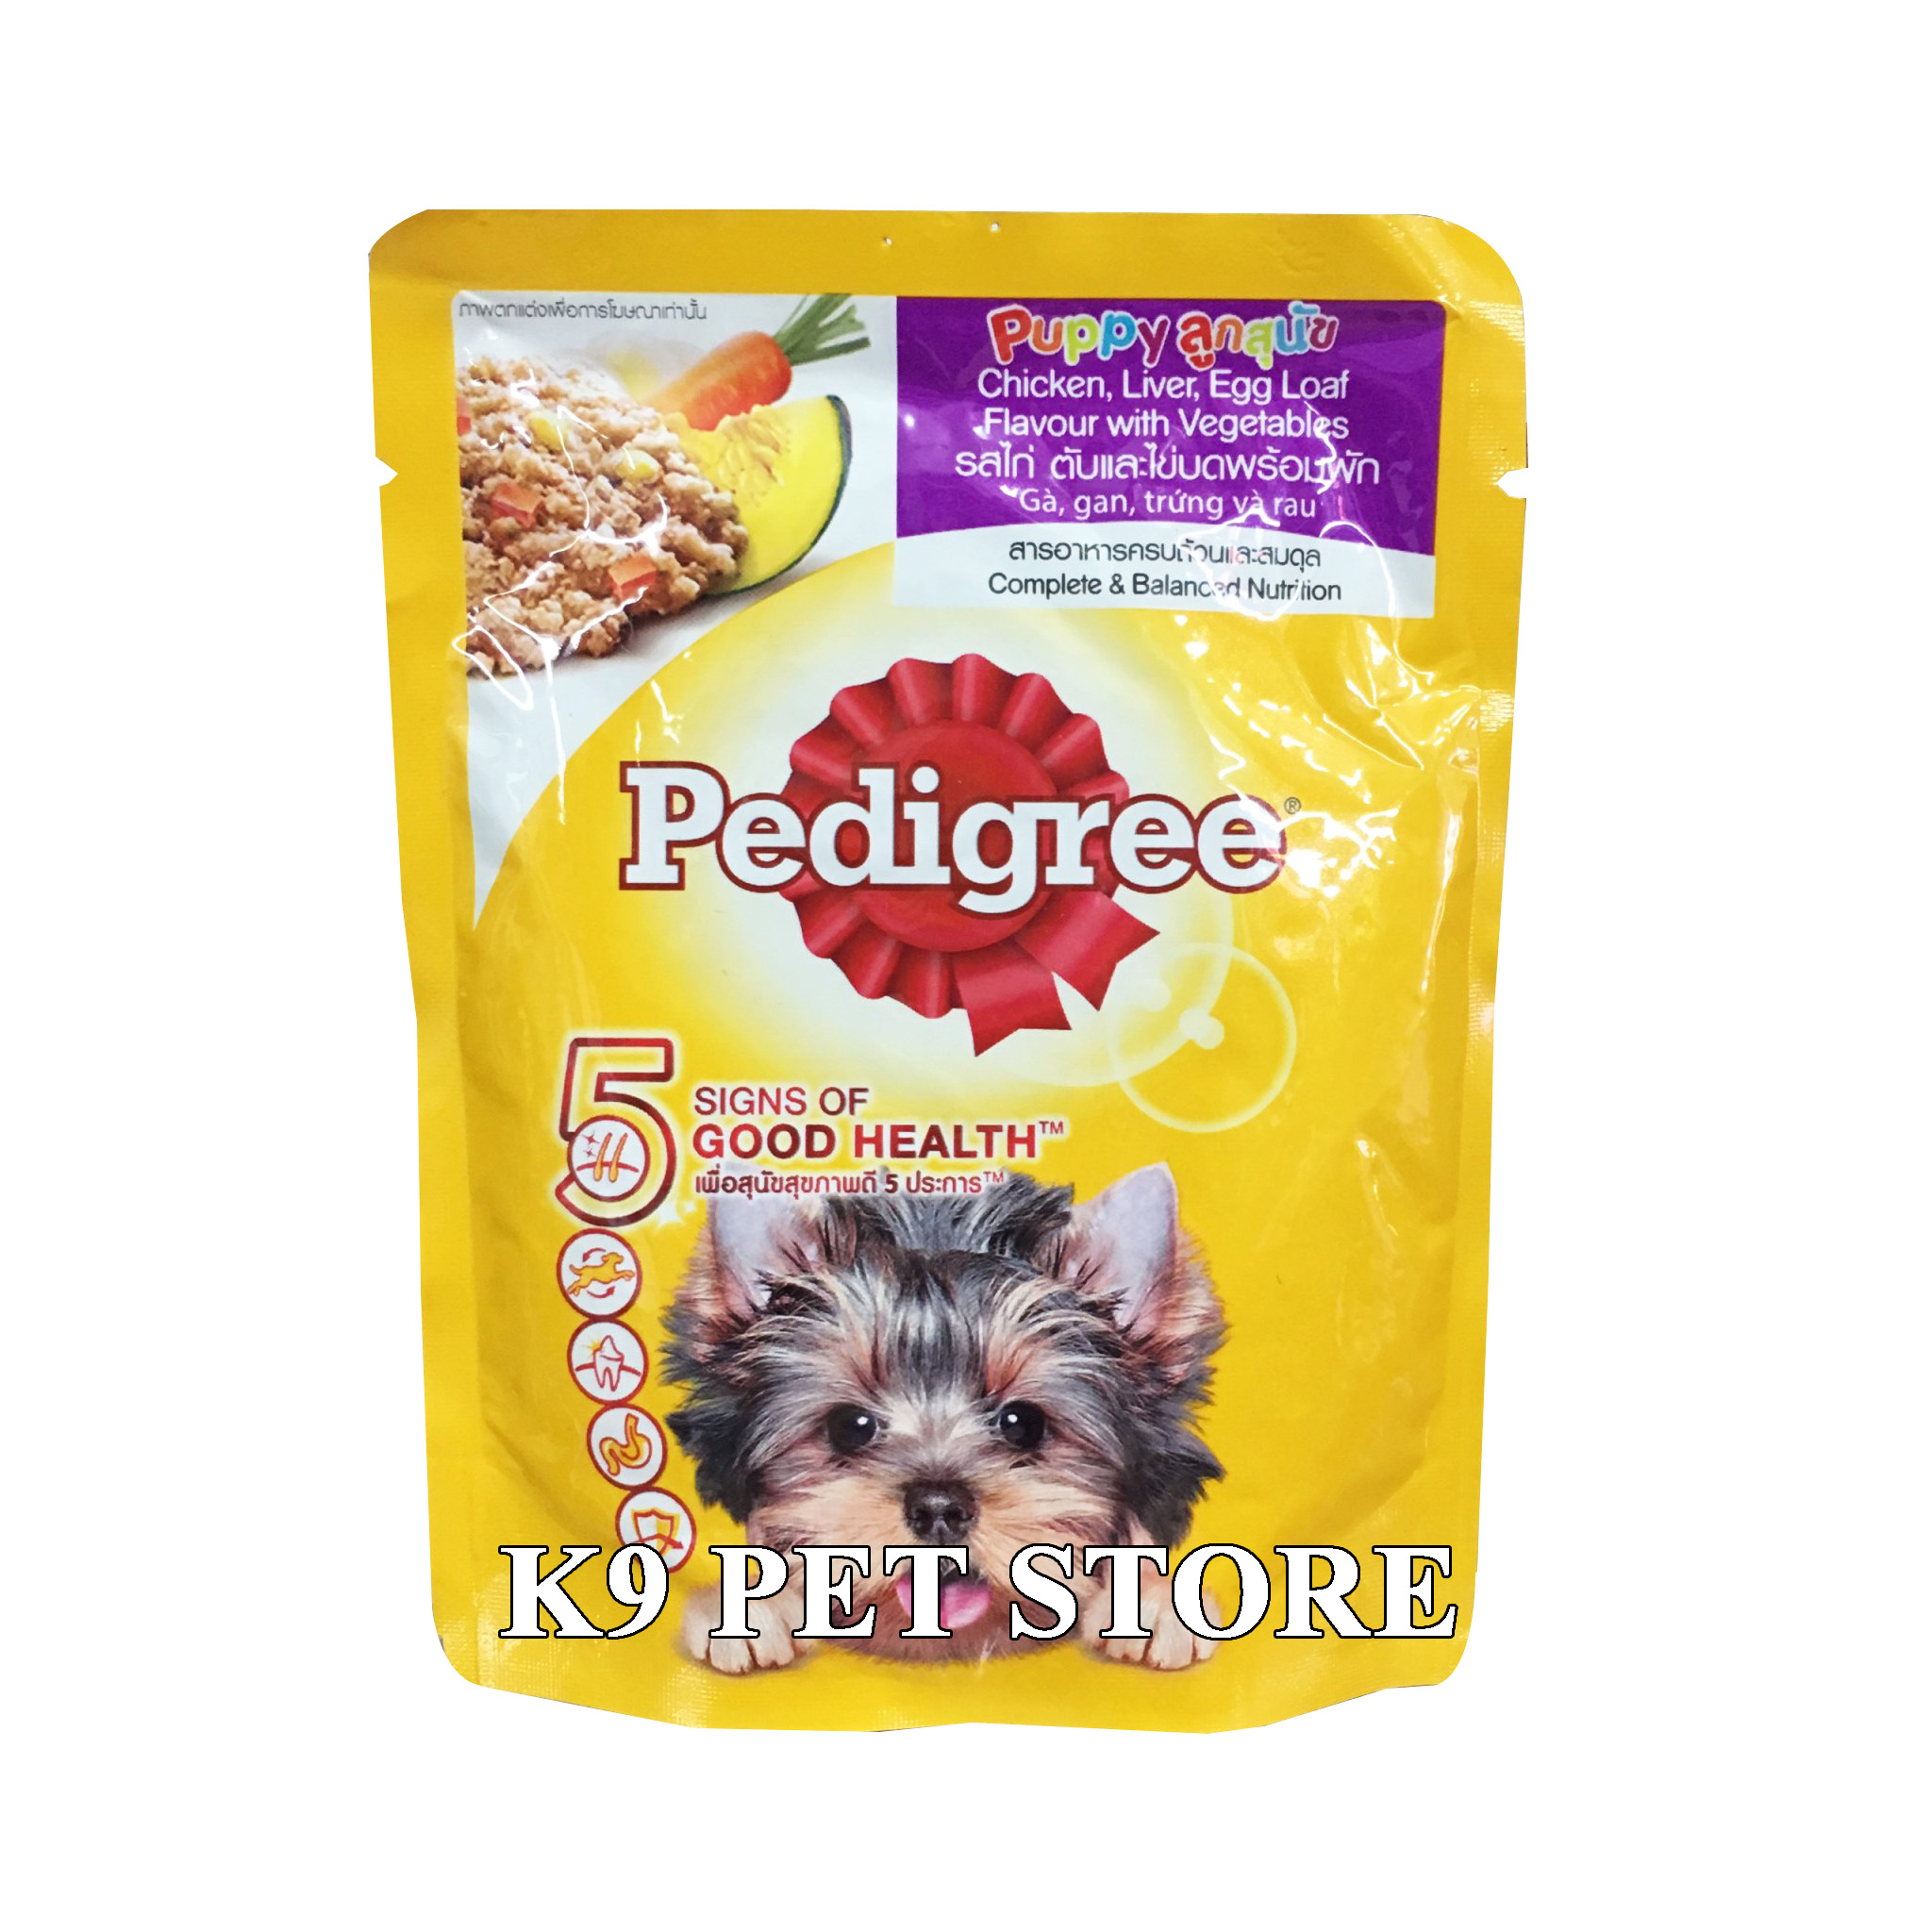 Pate Pedigree cho chó con vị gà, gan, trứng và rau 130g